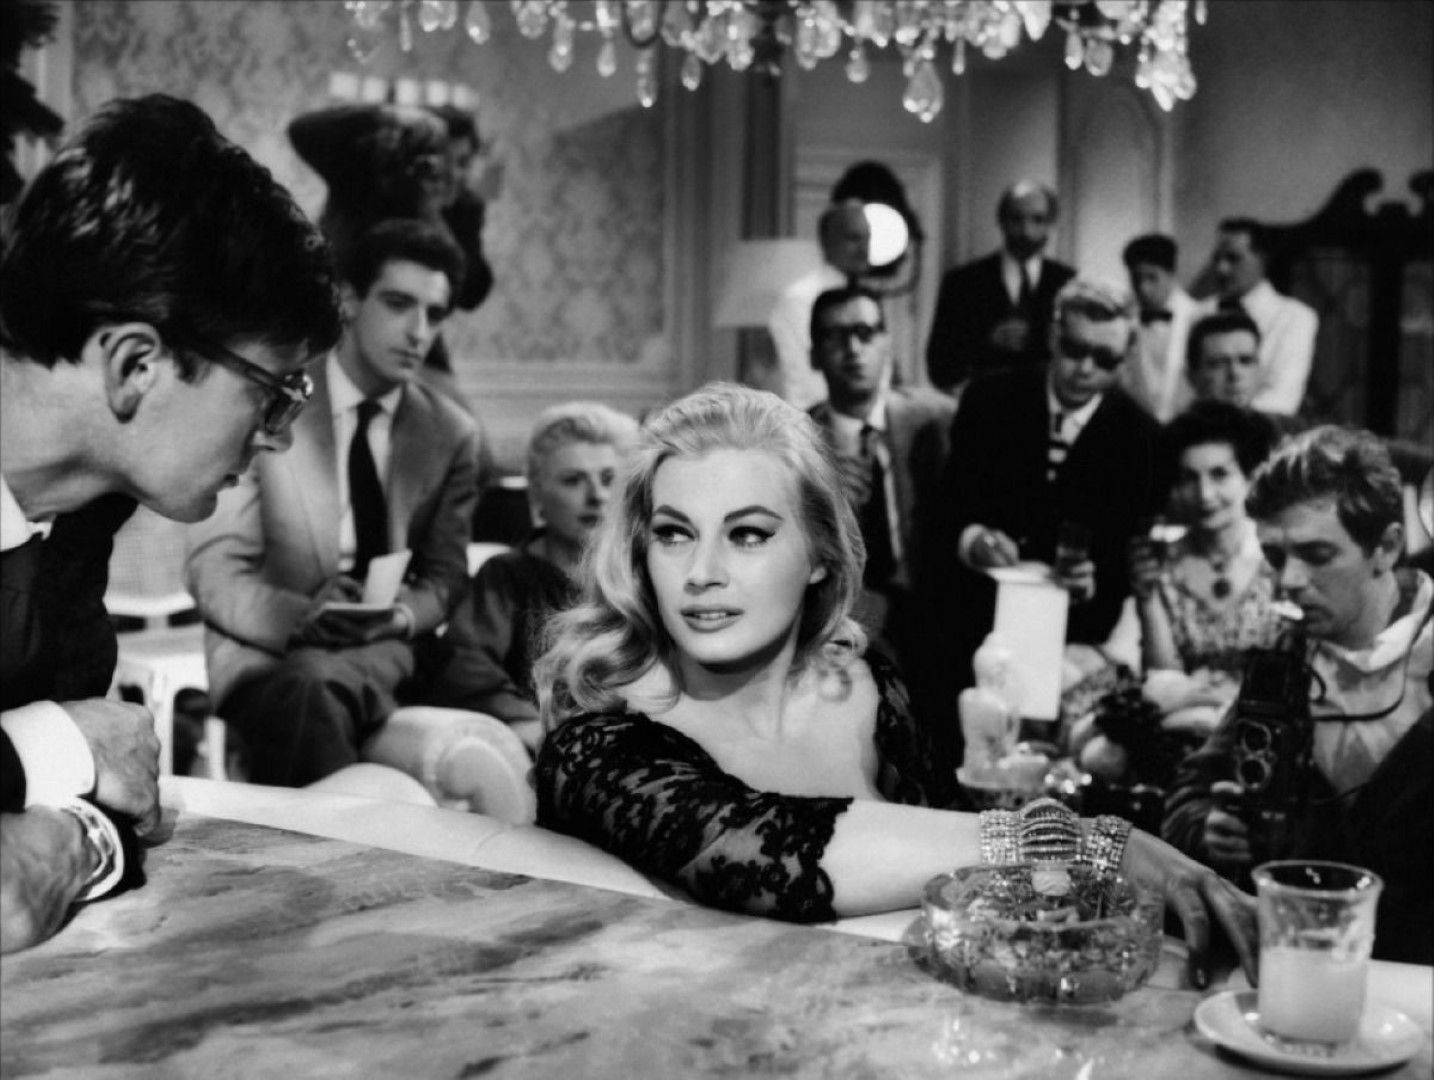 „Сладък живот“  е италианско-френски игрален филм – трагикомедия, излязъл по екраните през 1960 година, режисиран от Федерико Фелини с участието на Марчело Мастрояни, Анита Екберг и Анук Еме в главните роли. Сценарият е написан от режисьора Фелини в сътрудничество с Тулио Пинели, Енио Флаяно, Брунело Ронди и Пиер Паоло Пазолини.